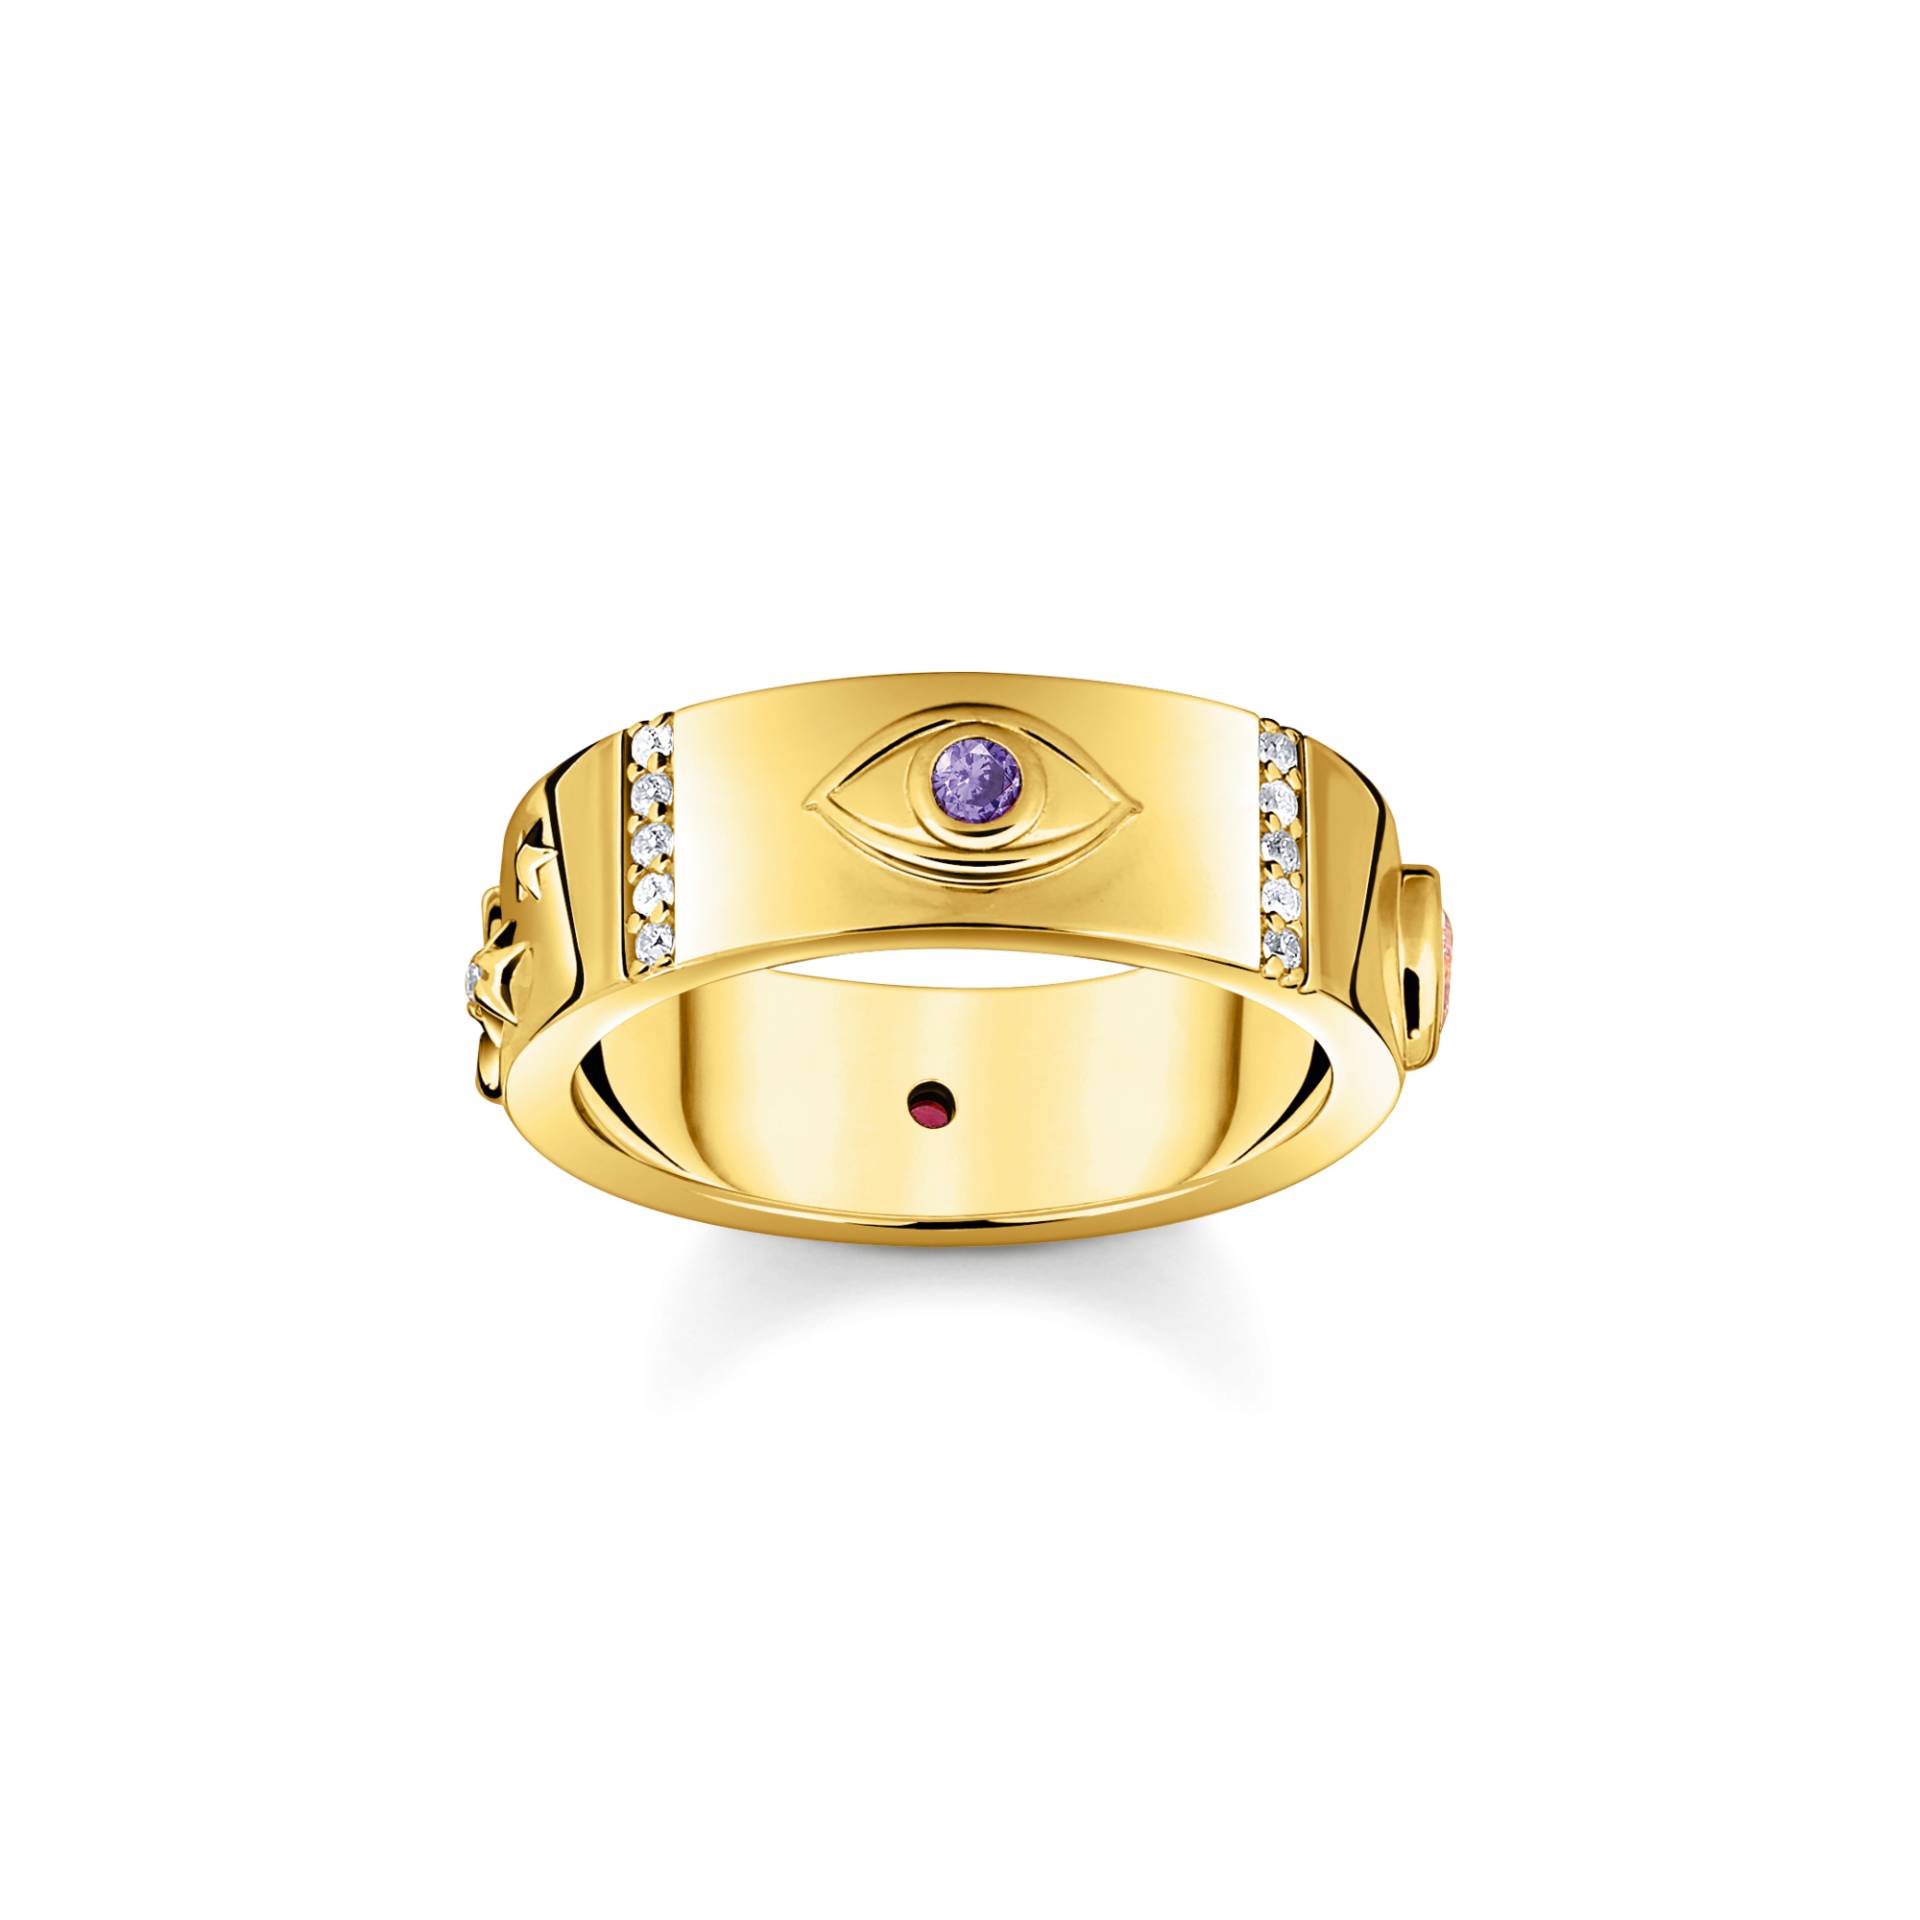 Thomas Sabo Ring mit kosmischen Symbolen und bunten Steinen vergoldet mehrfarbig TR2439-995-7-56 von Thomas Sabo